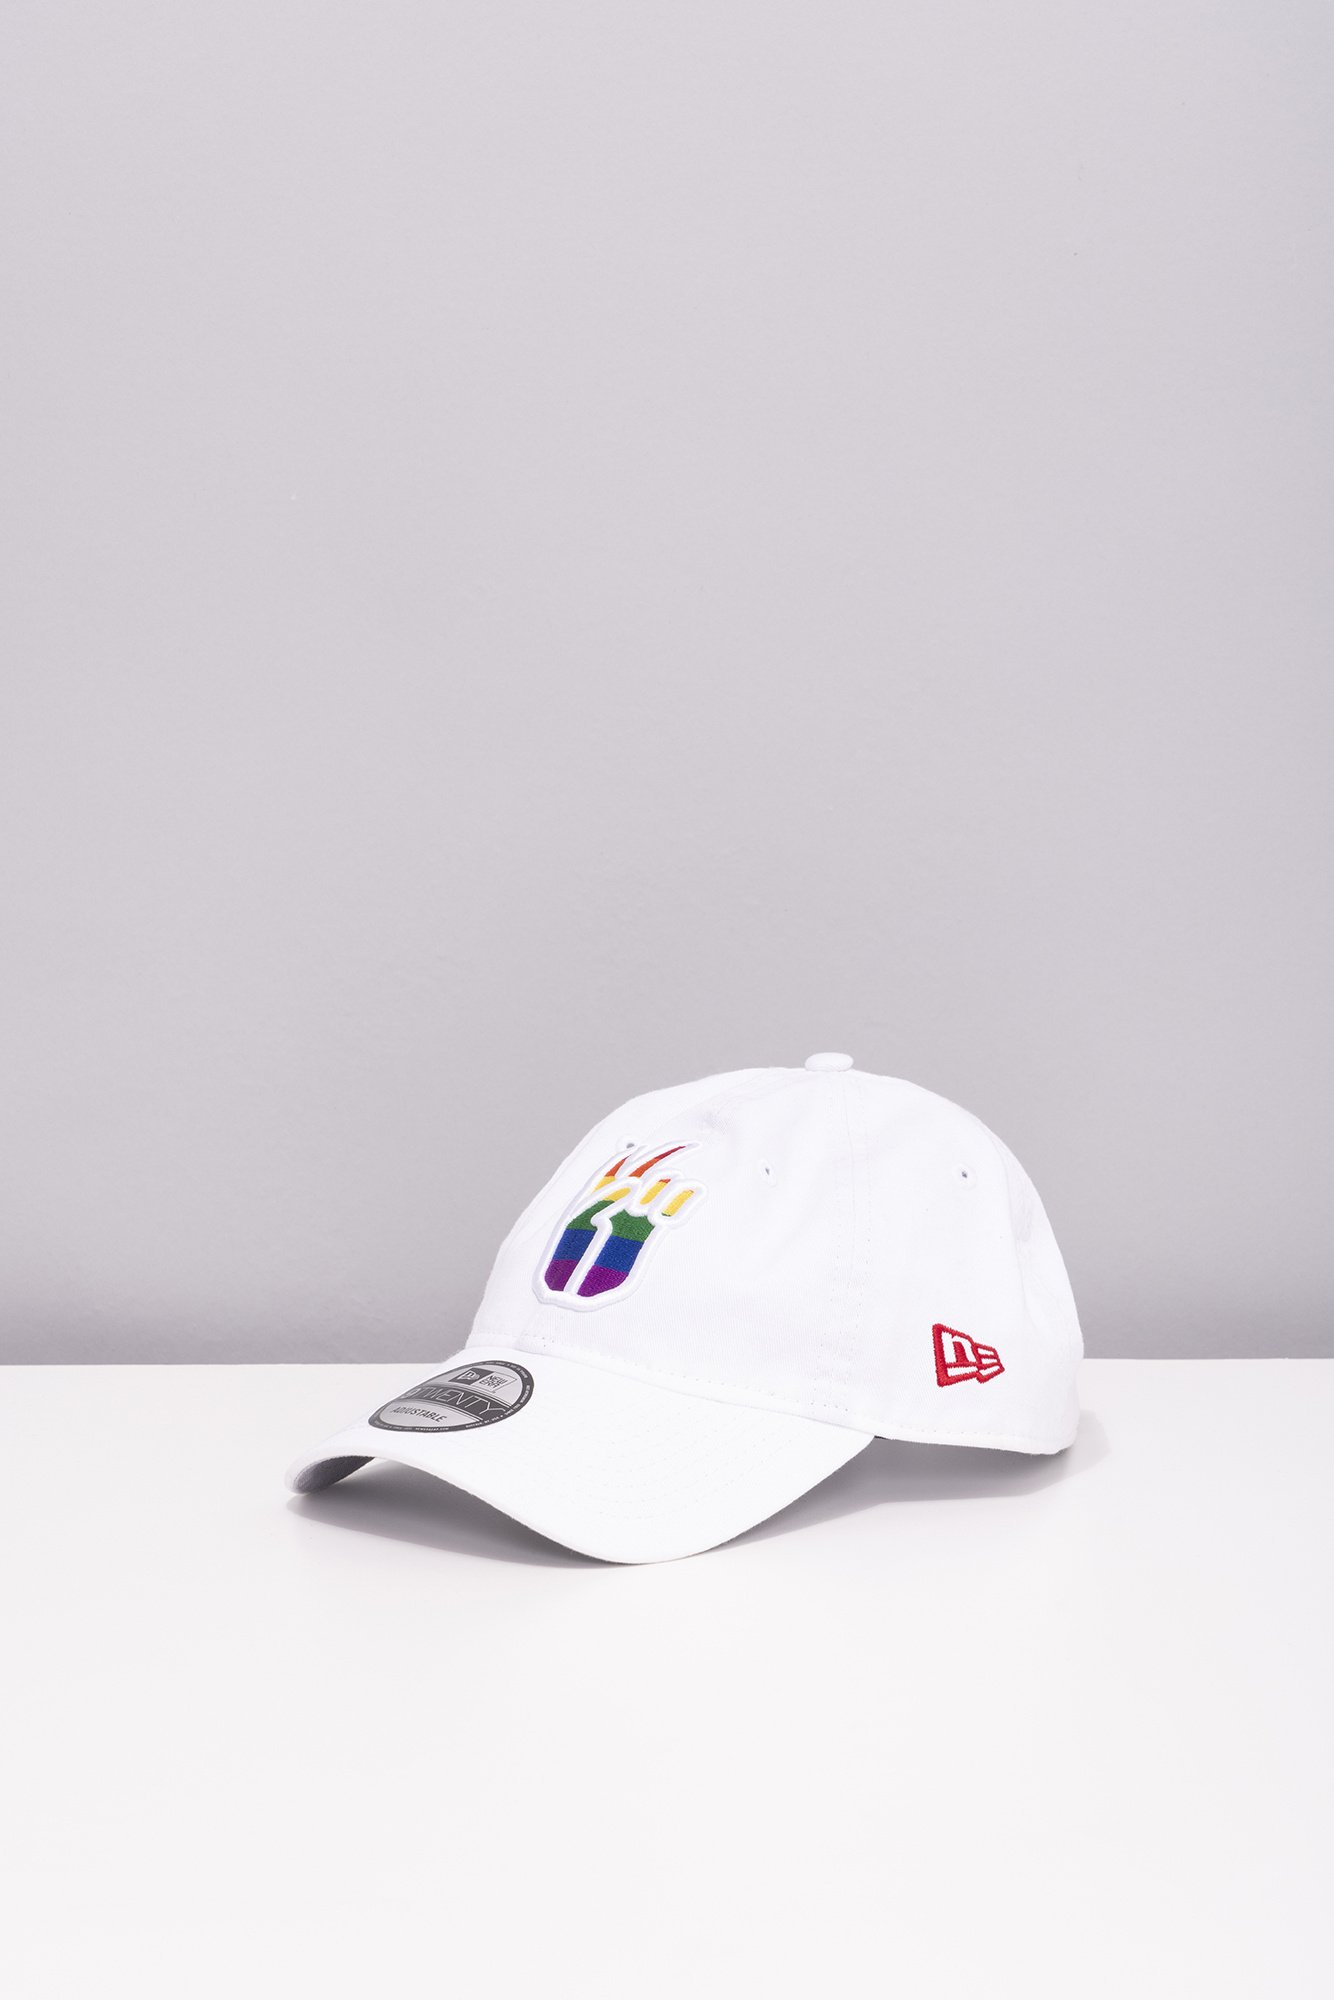 New Era Peace Sign Pride Cap - Tricolore Sports